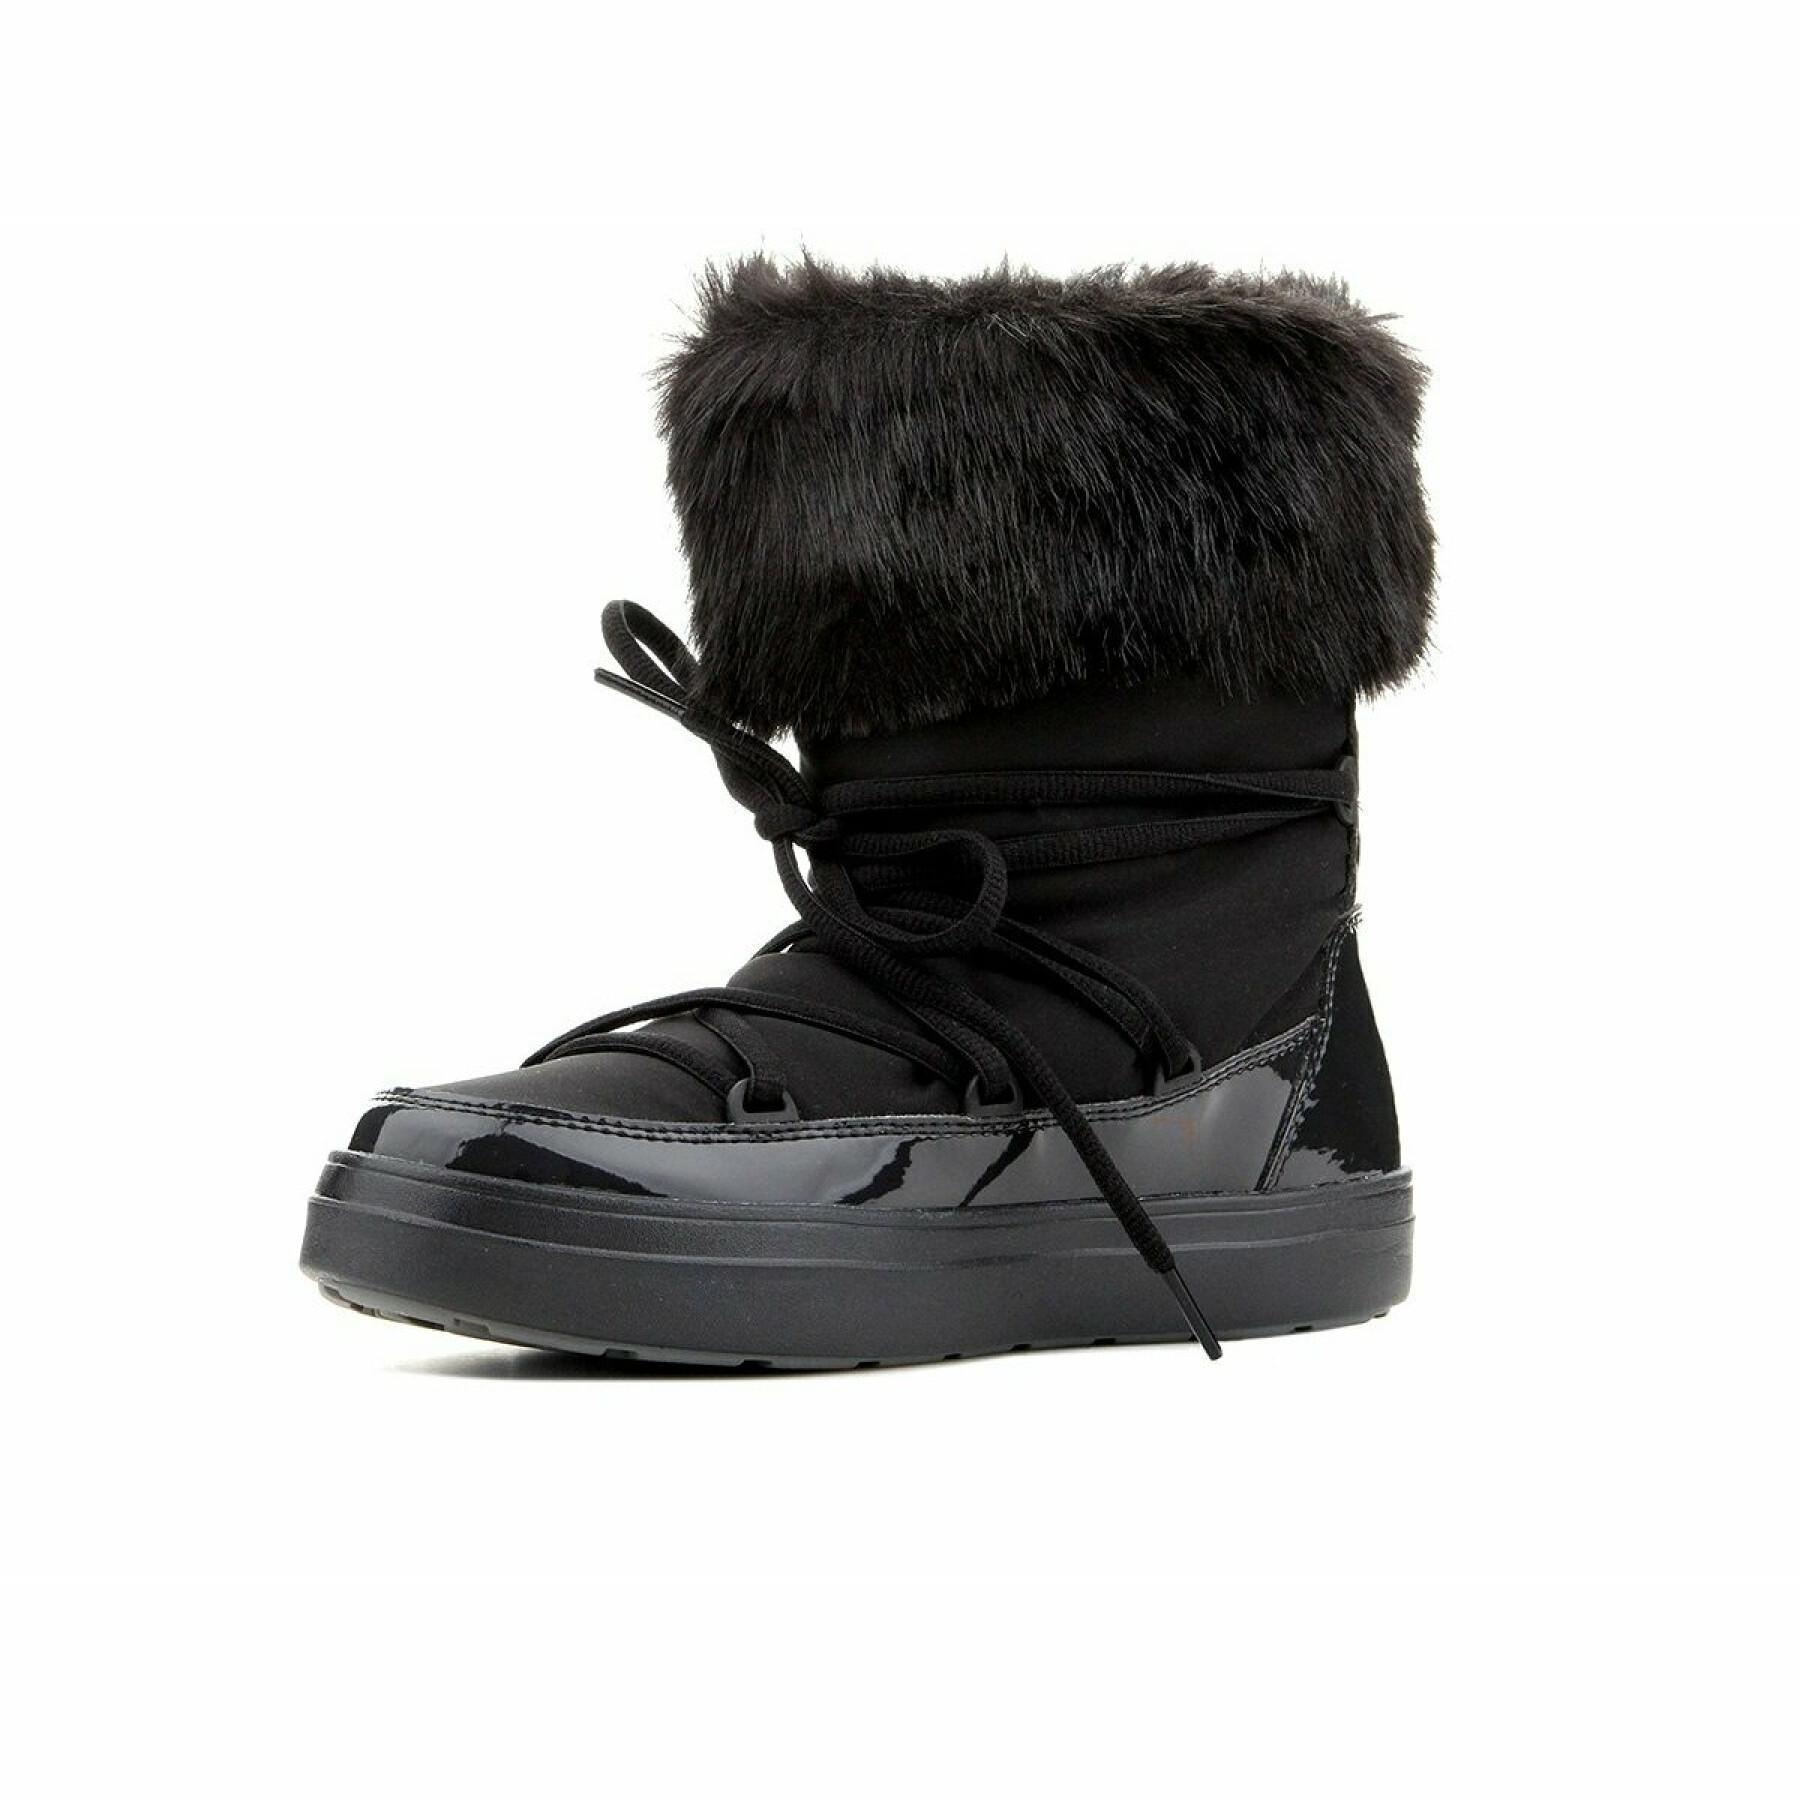 Damskie sznurowane buty śniegowe Crocs lodgepoint